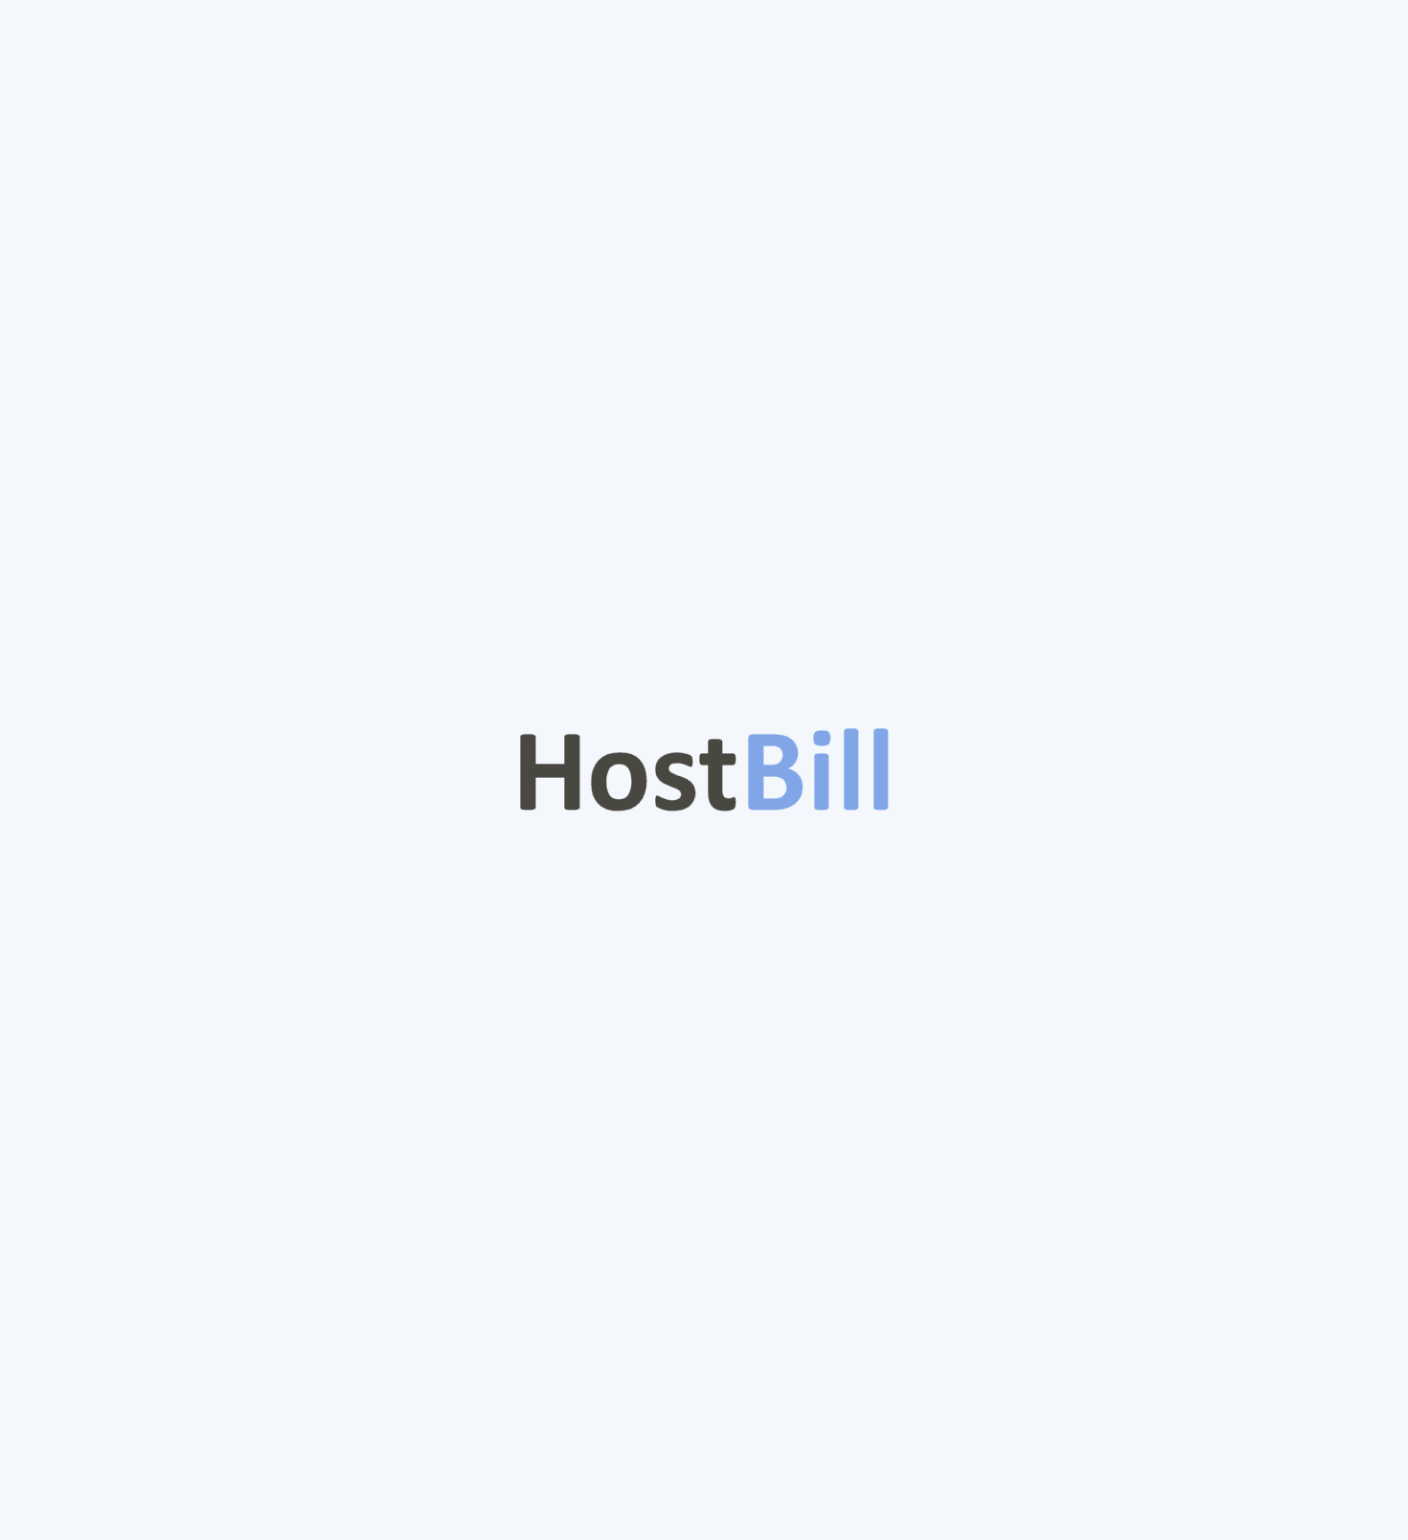 HostBill